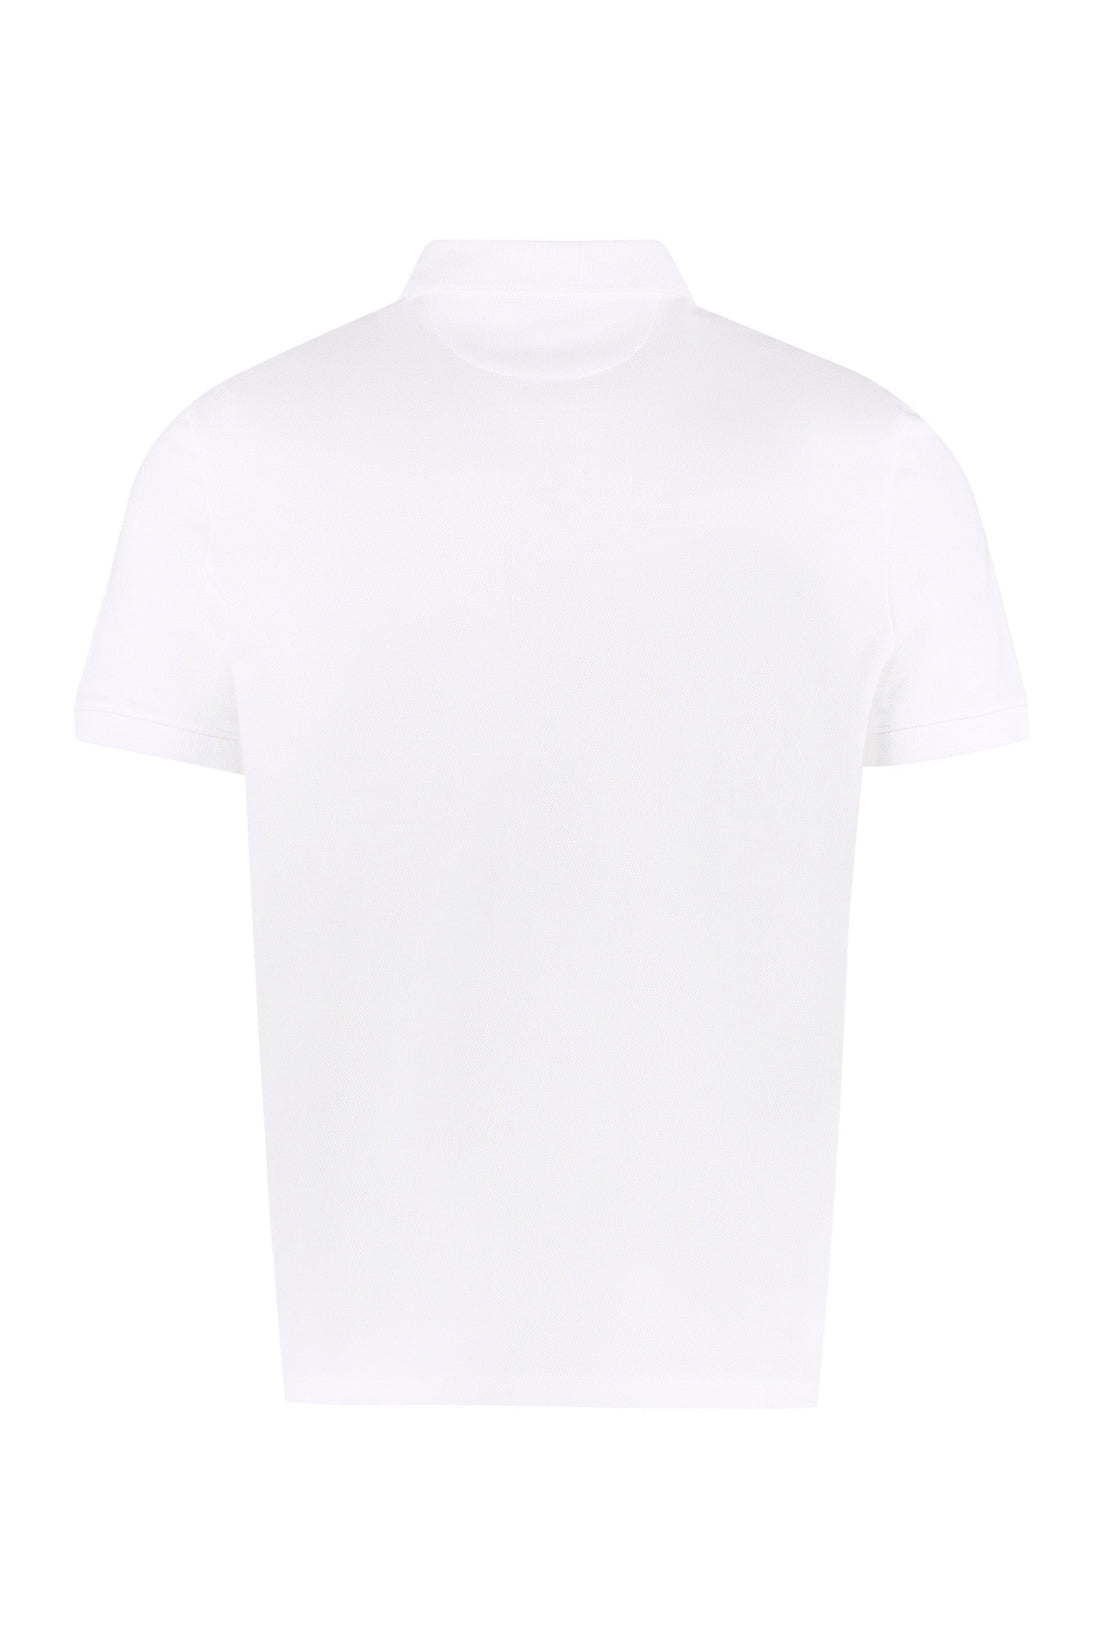 Valentino-OUTLET-SALE-Cotton-piqué polo shirt-ARCHIVIST